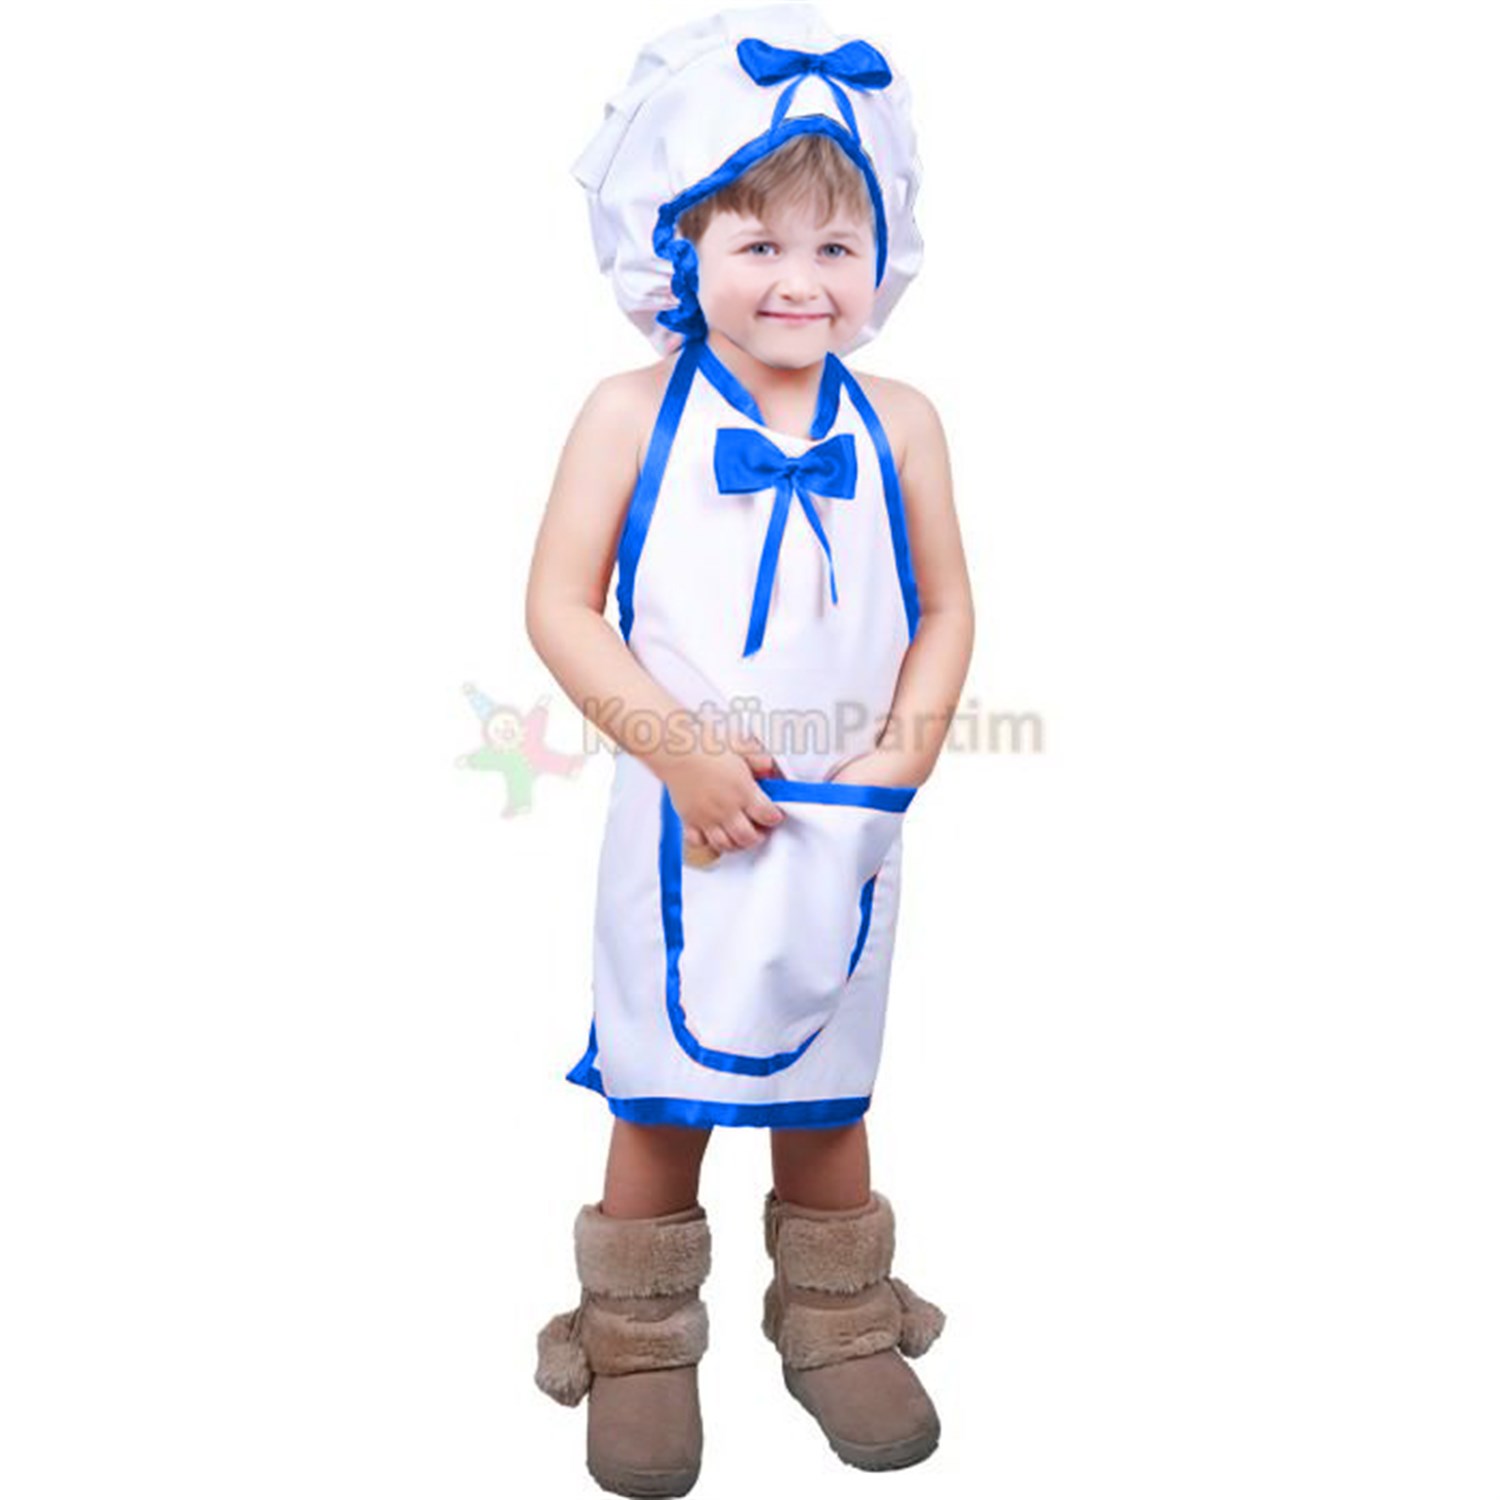 Aşçı Kıyafeti Erkek Çocuk - KostümPartim®